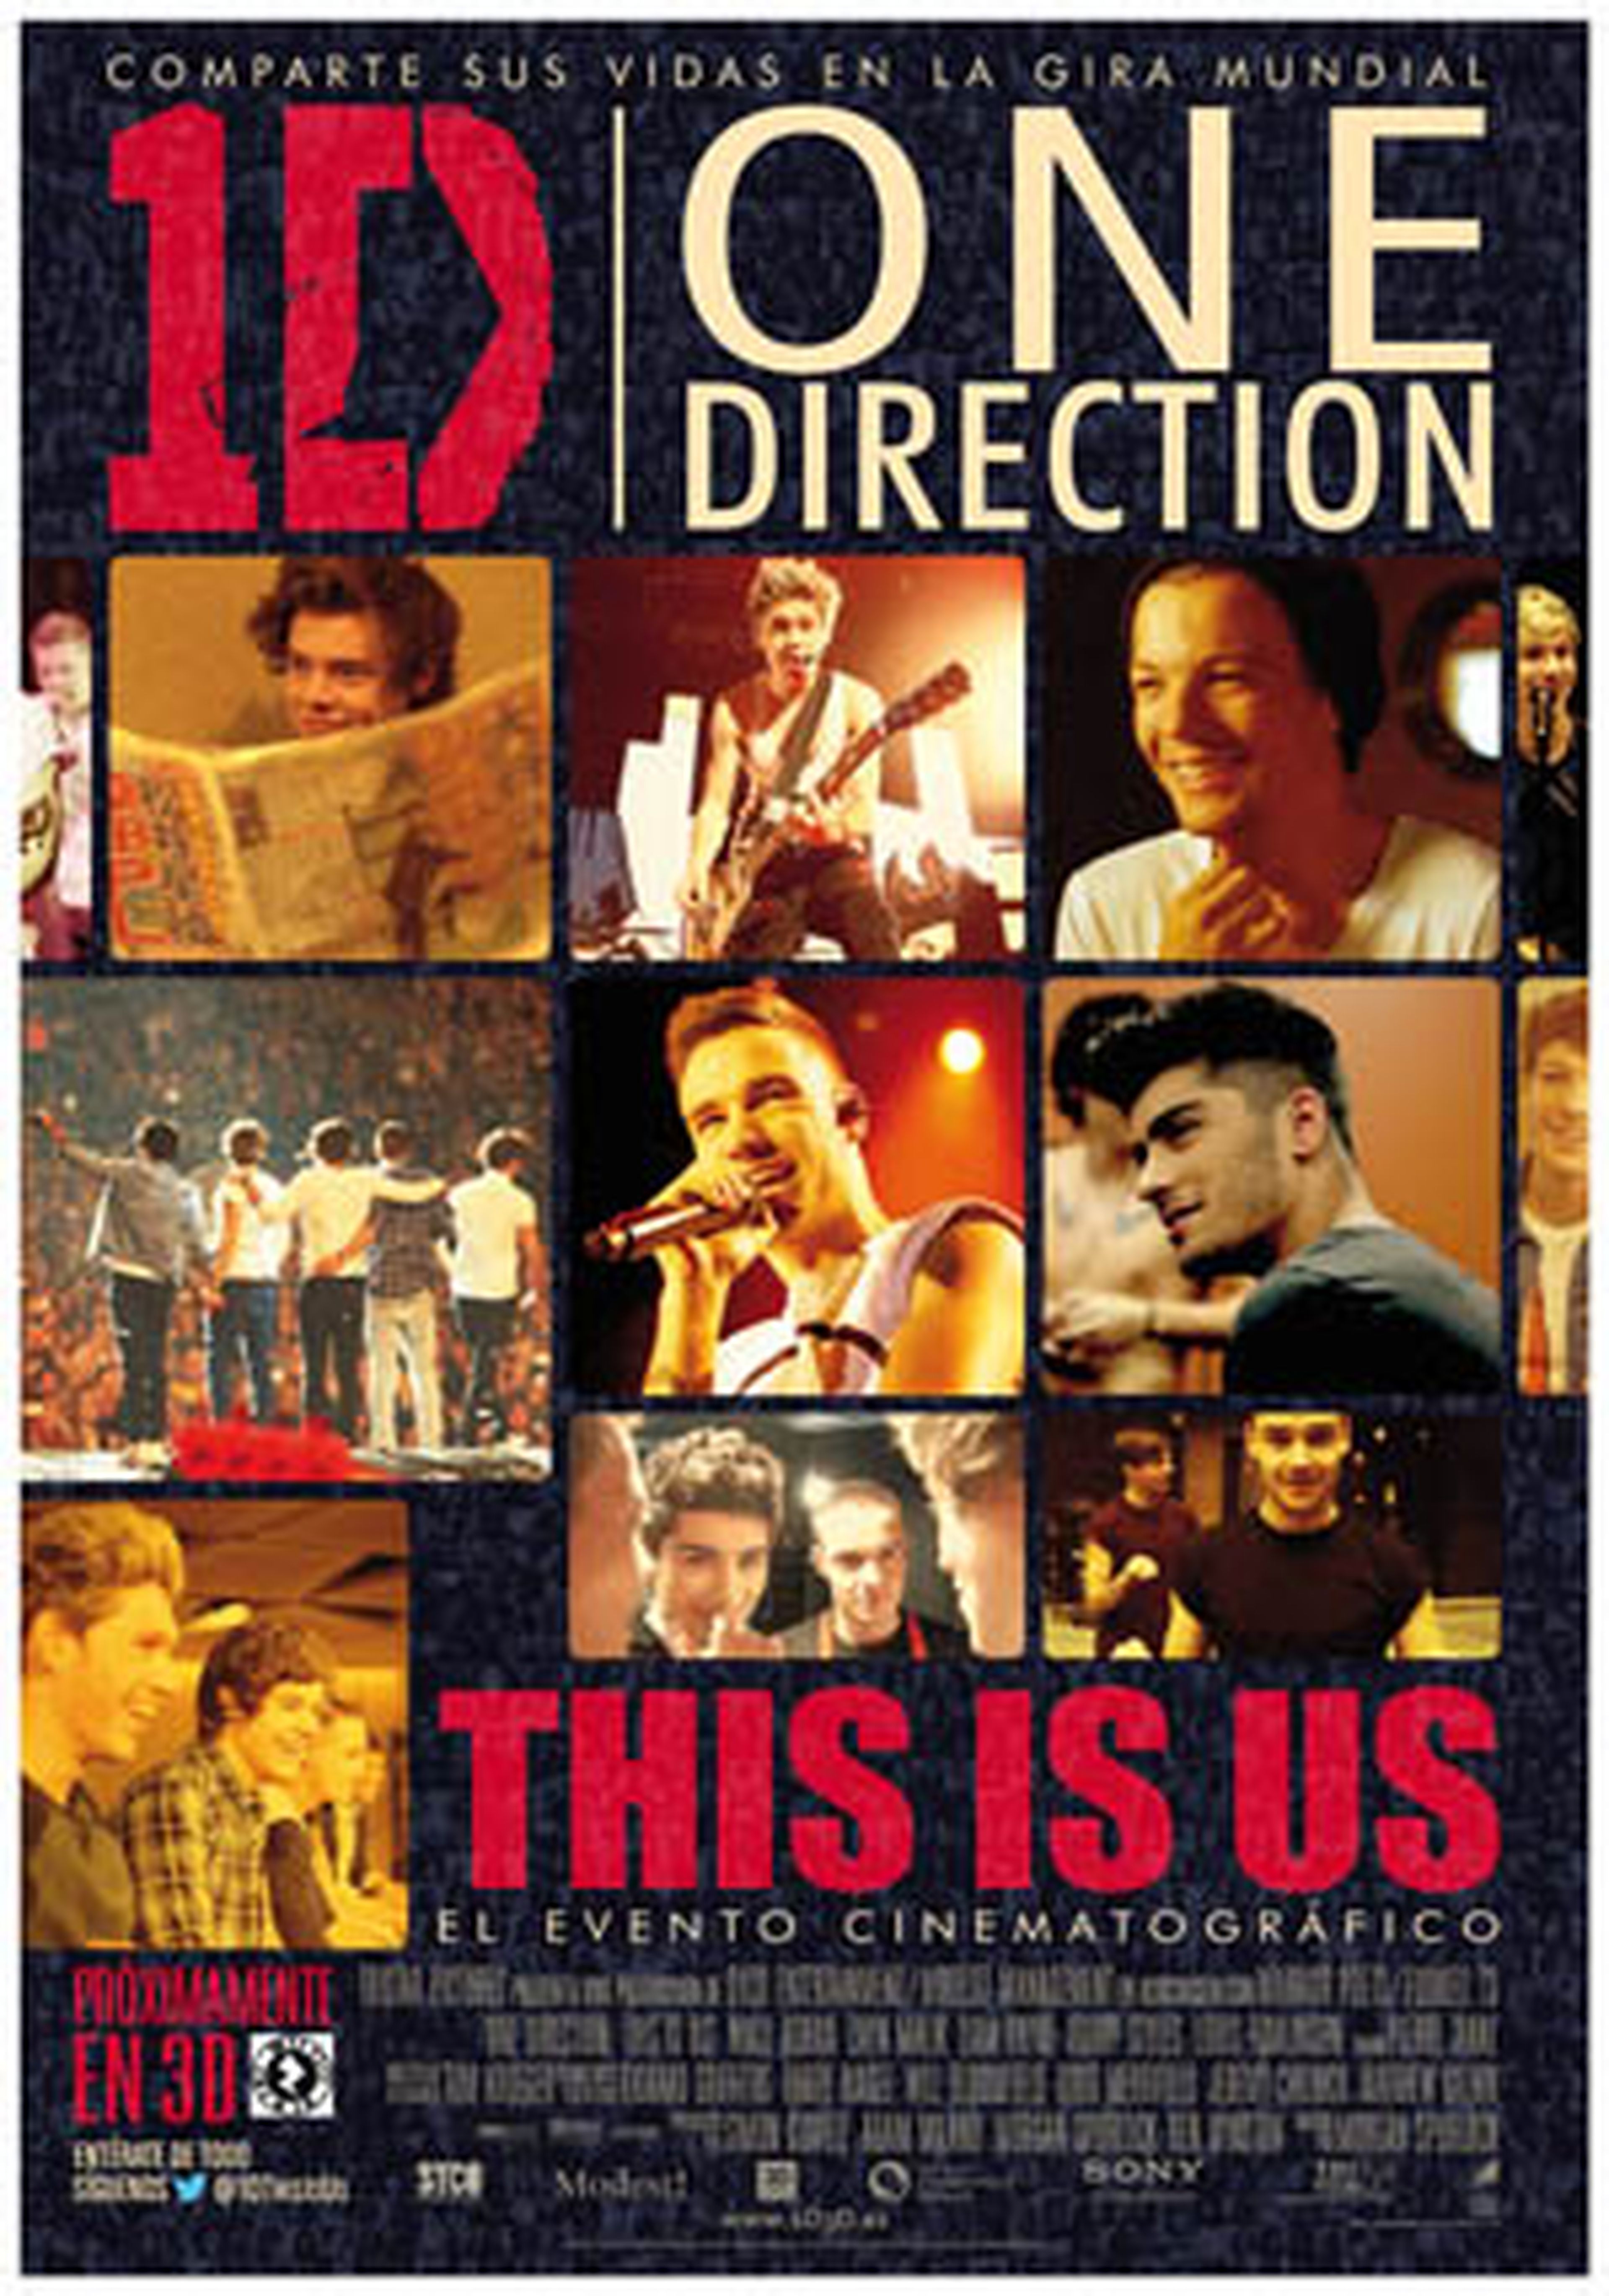 One Direction: This Is Us, una película por y para fans